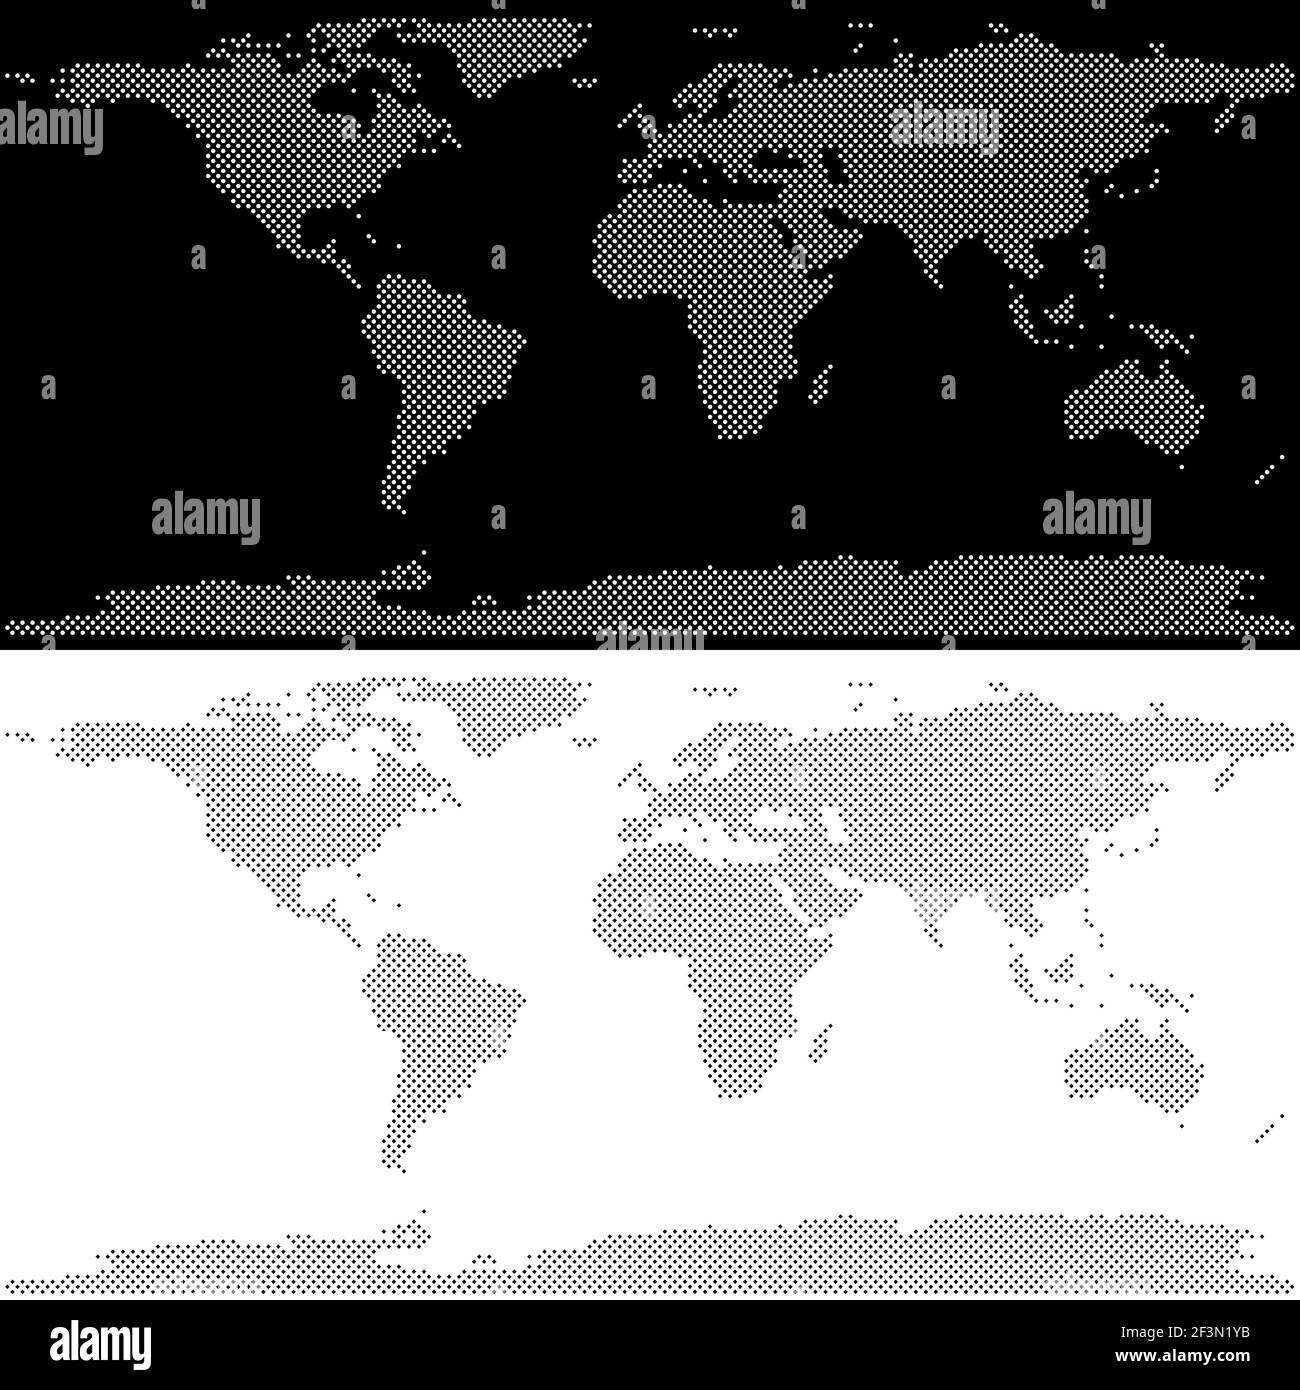 Weltkarte Vektor-Design, Darstellung mit Kreisen und Quadraten gemacht, in schwarz-weißen Farben Stock Vektor